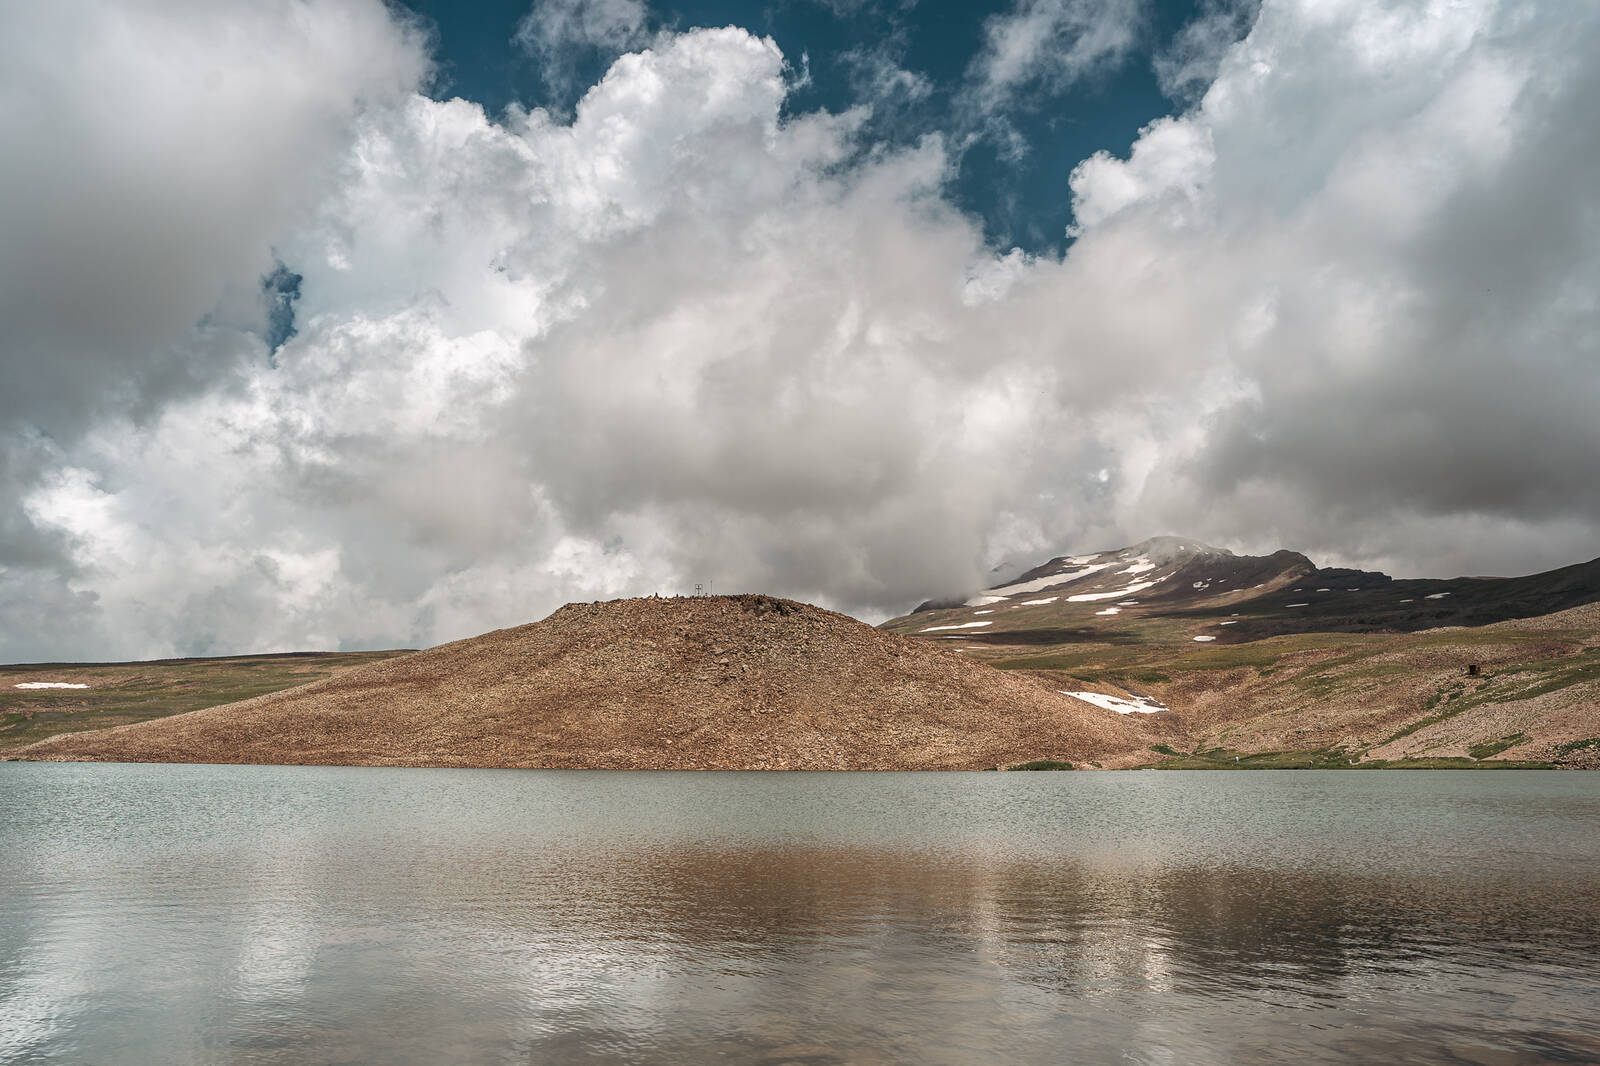 Image of Lake Kari by James Billings.